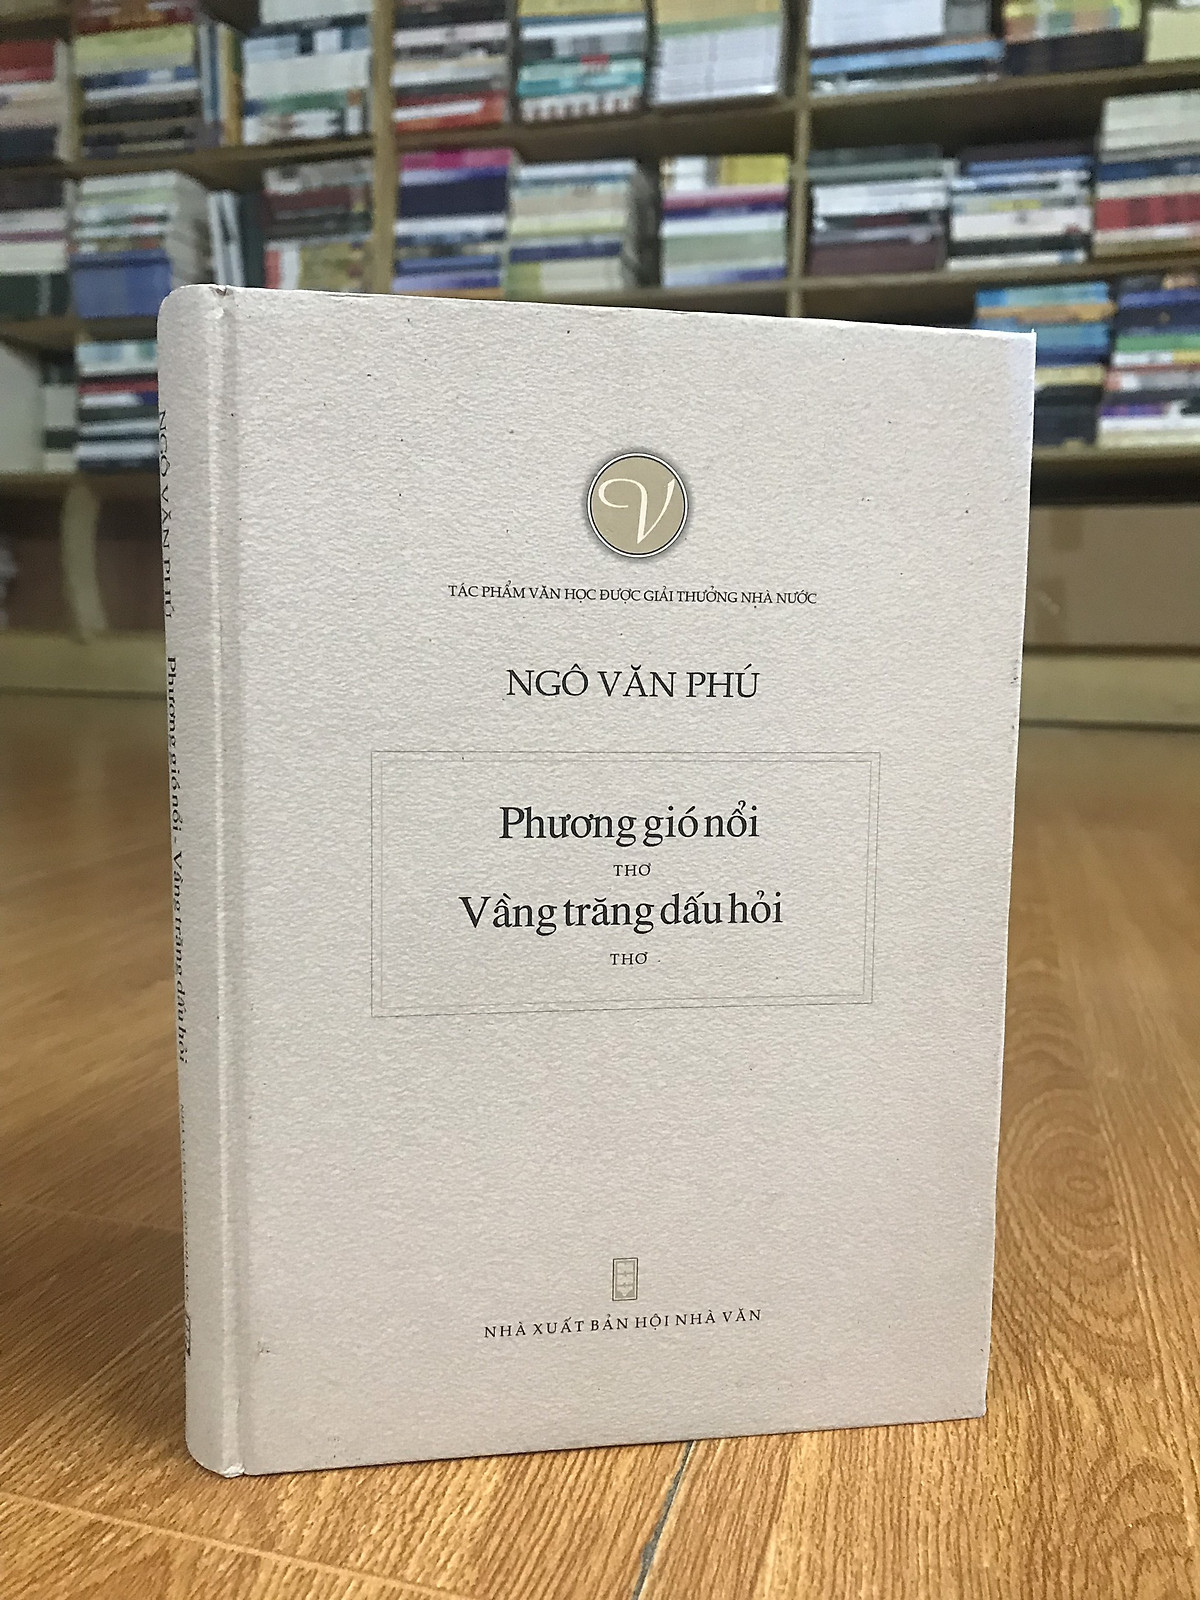 Tuyển tập thơ Ngô Văn Phú: Phương gió nổi - Vầng trăng dấu hỏi (Tác phẩm văn học được Giải thưởng Nhà Nước) sách bìa cứng tặng kèm bookmark